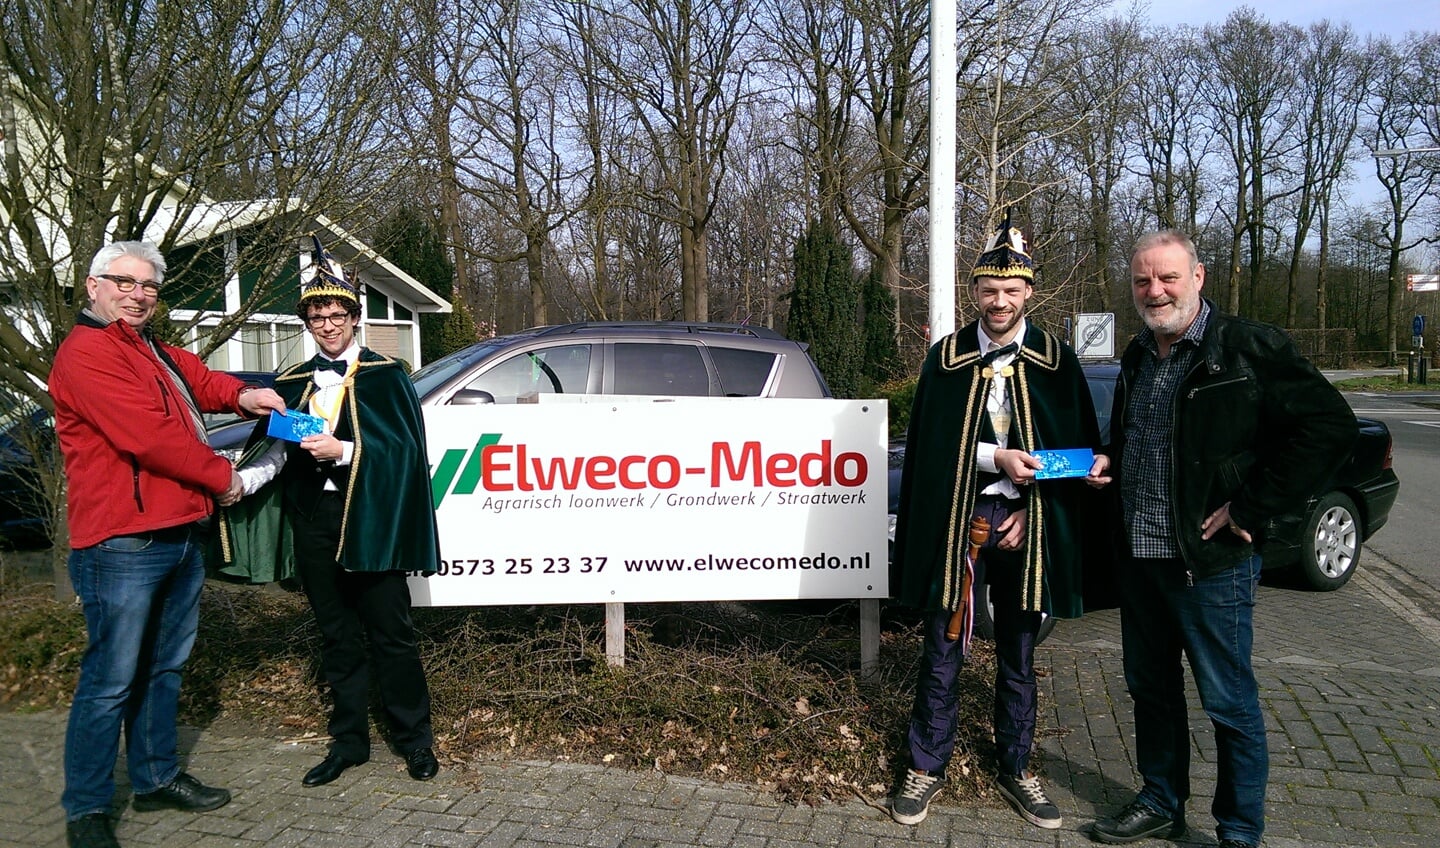  De derde en vierde prijs, mede mogelijk gemaakt door Elweco- Medo zijn gewonnen door LMB Vorden en de heer Leferink. Foto: PR